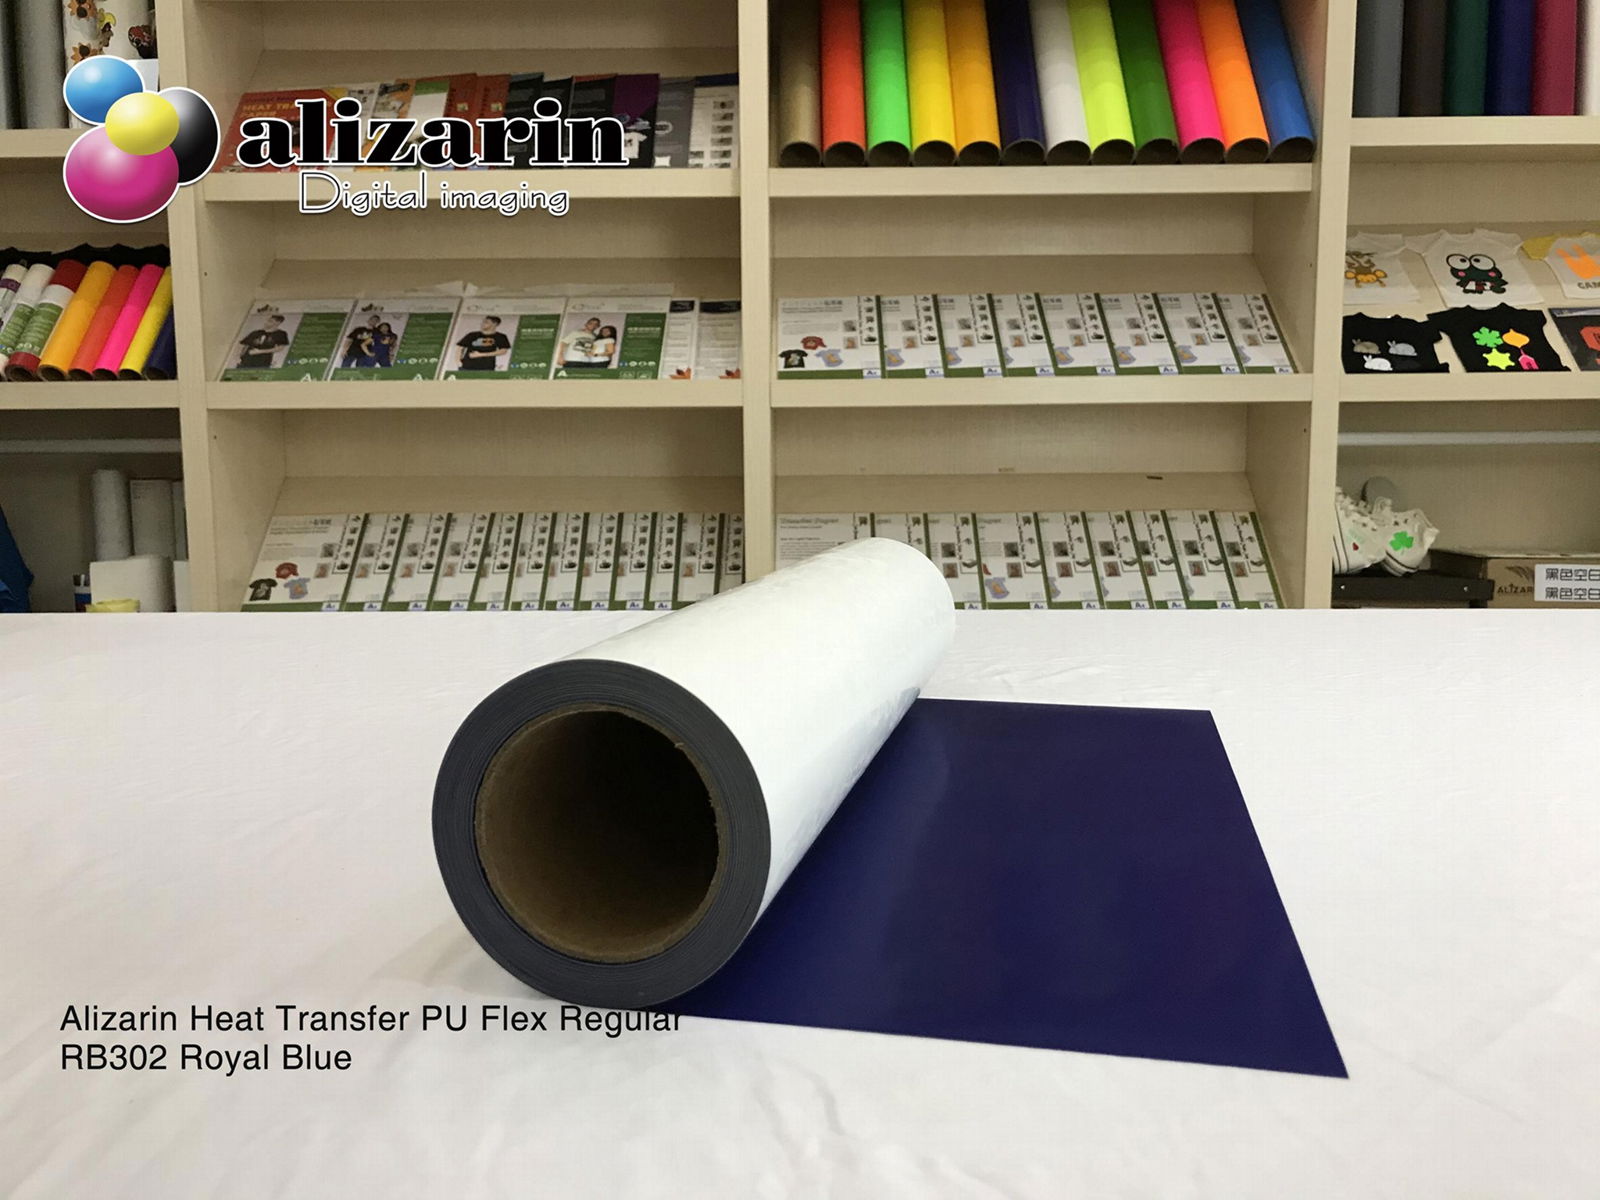 Alizarin Cuttable Heat Transfer PU Flex Regular (RB302 Royal Blue)